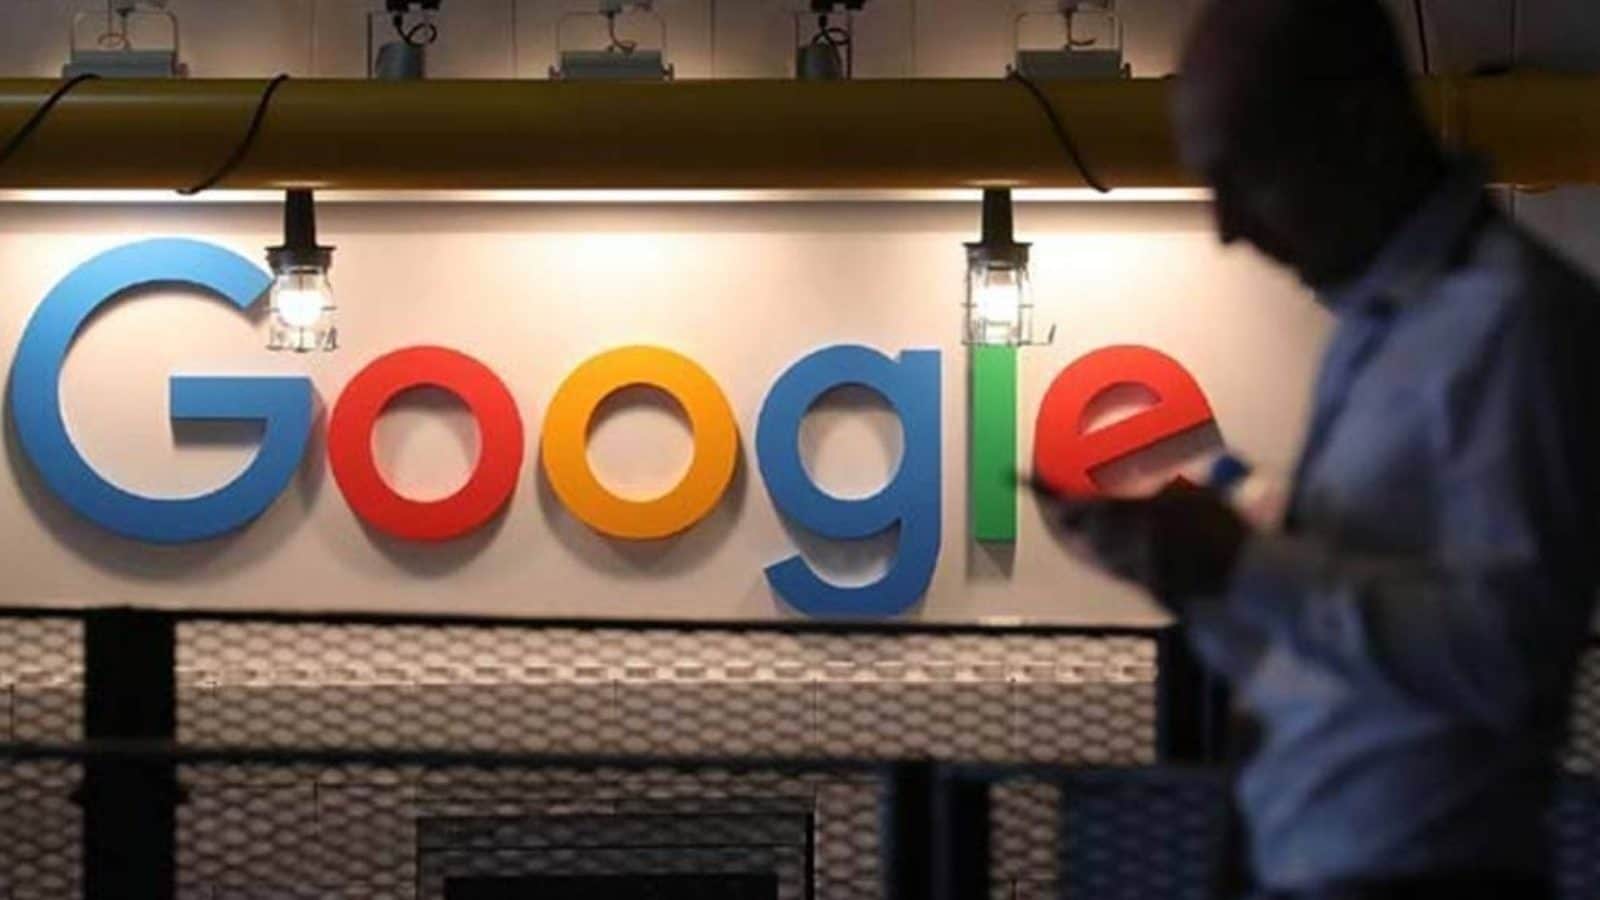 Google menawarkan fasilitas yang memungkinkan pengguna untuk membayar sesuai pilihan mereka.